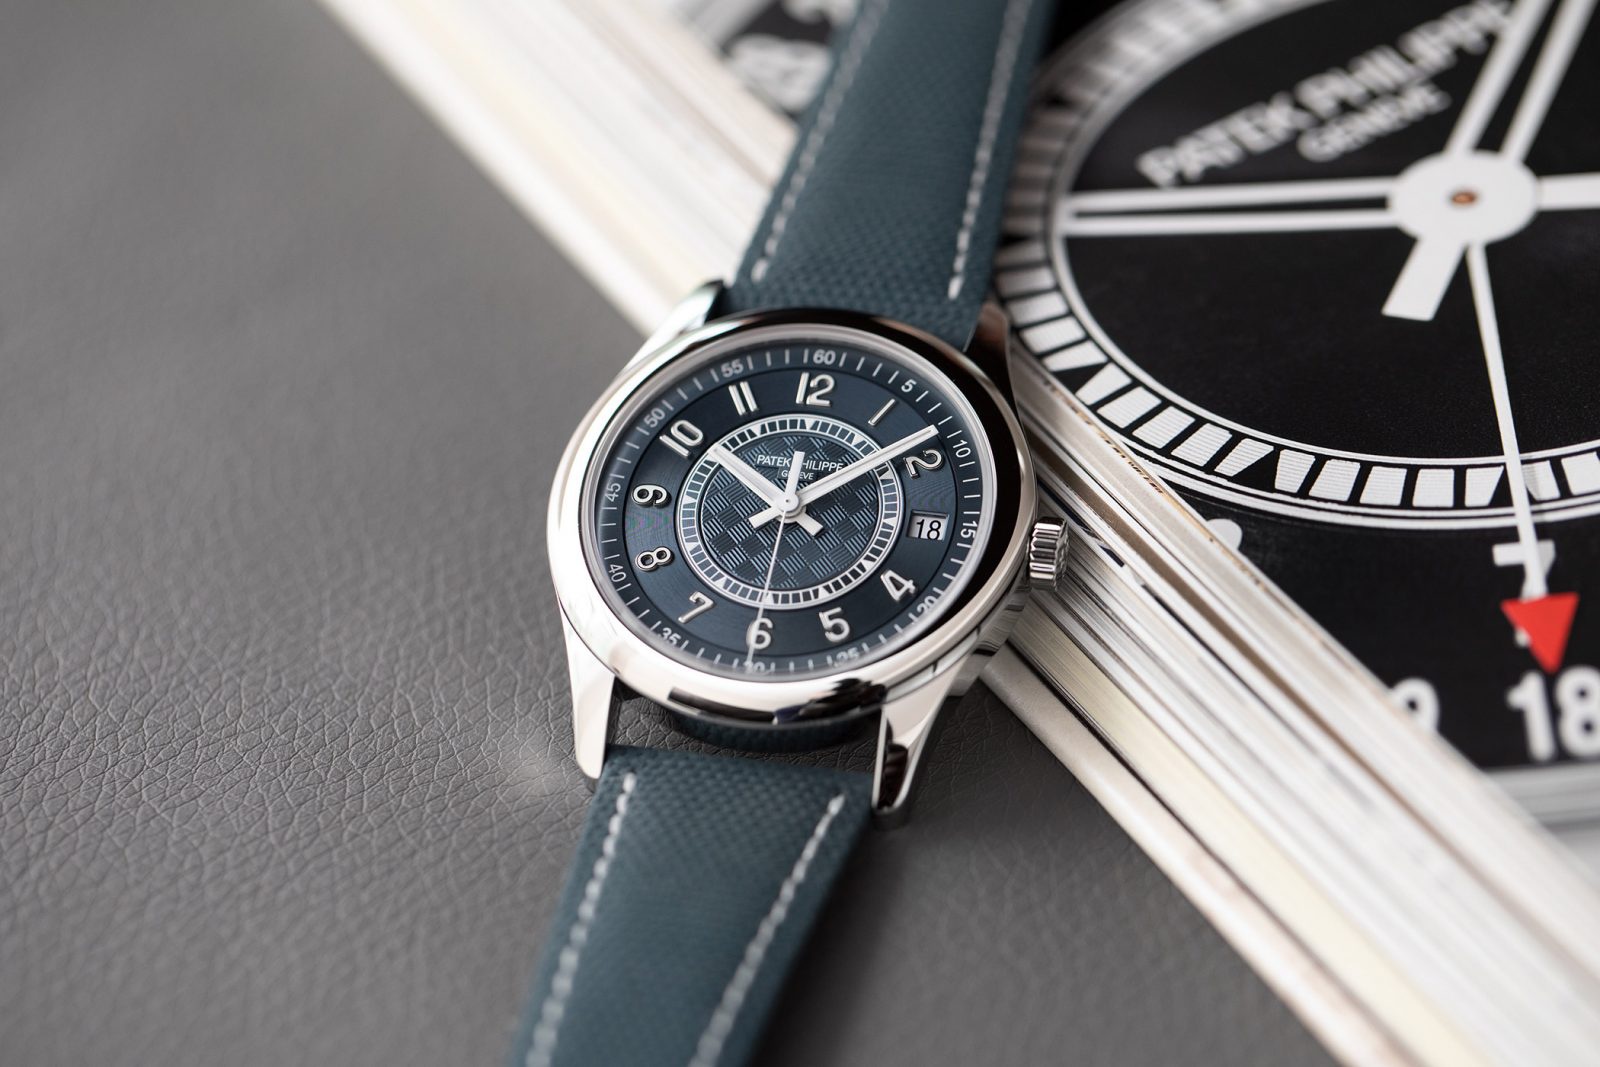 Dù đã là thiết kế vào năm 2020, nhưng Patek Philipe Calatrava Ref 6007A-001 vẫn là mẫu đồng hồ được ưa chuộng cho các chàng trai công sở. Bạn cần một chiếc đồng hồ sang trọng vừa đủ nhưng vẫn đảm bảo được tính linh hoạt khi phối cùng nhiều trang phục khác nhau thì đây chính là chiếc đồng hồ dành cho bạn.